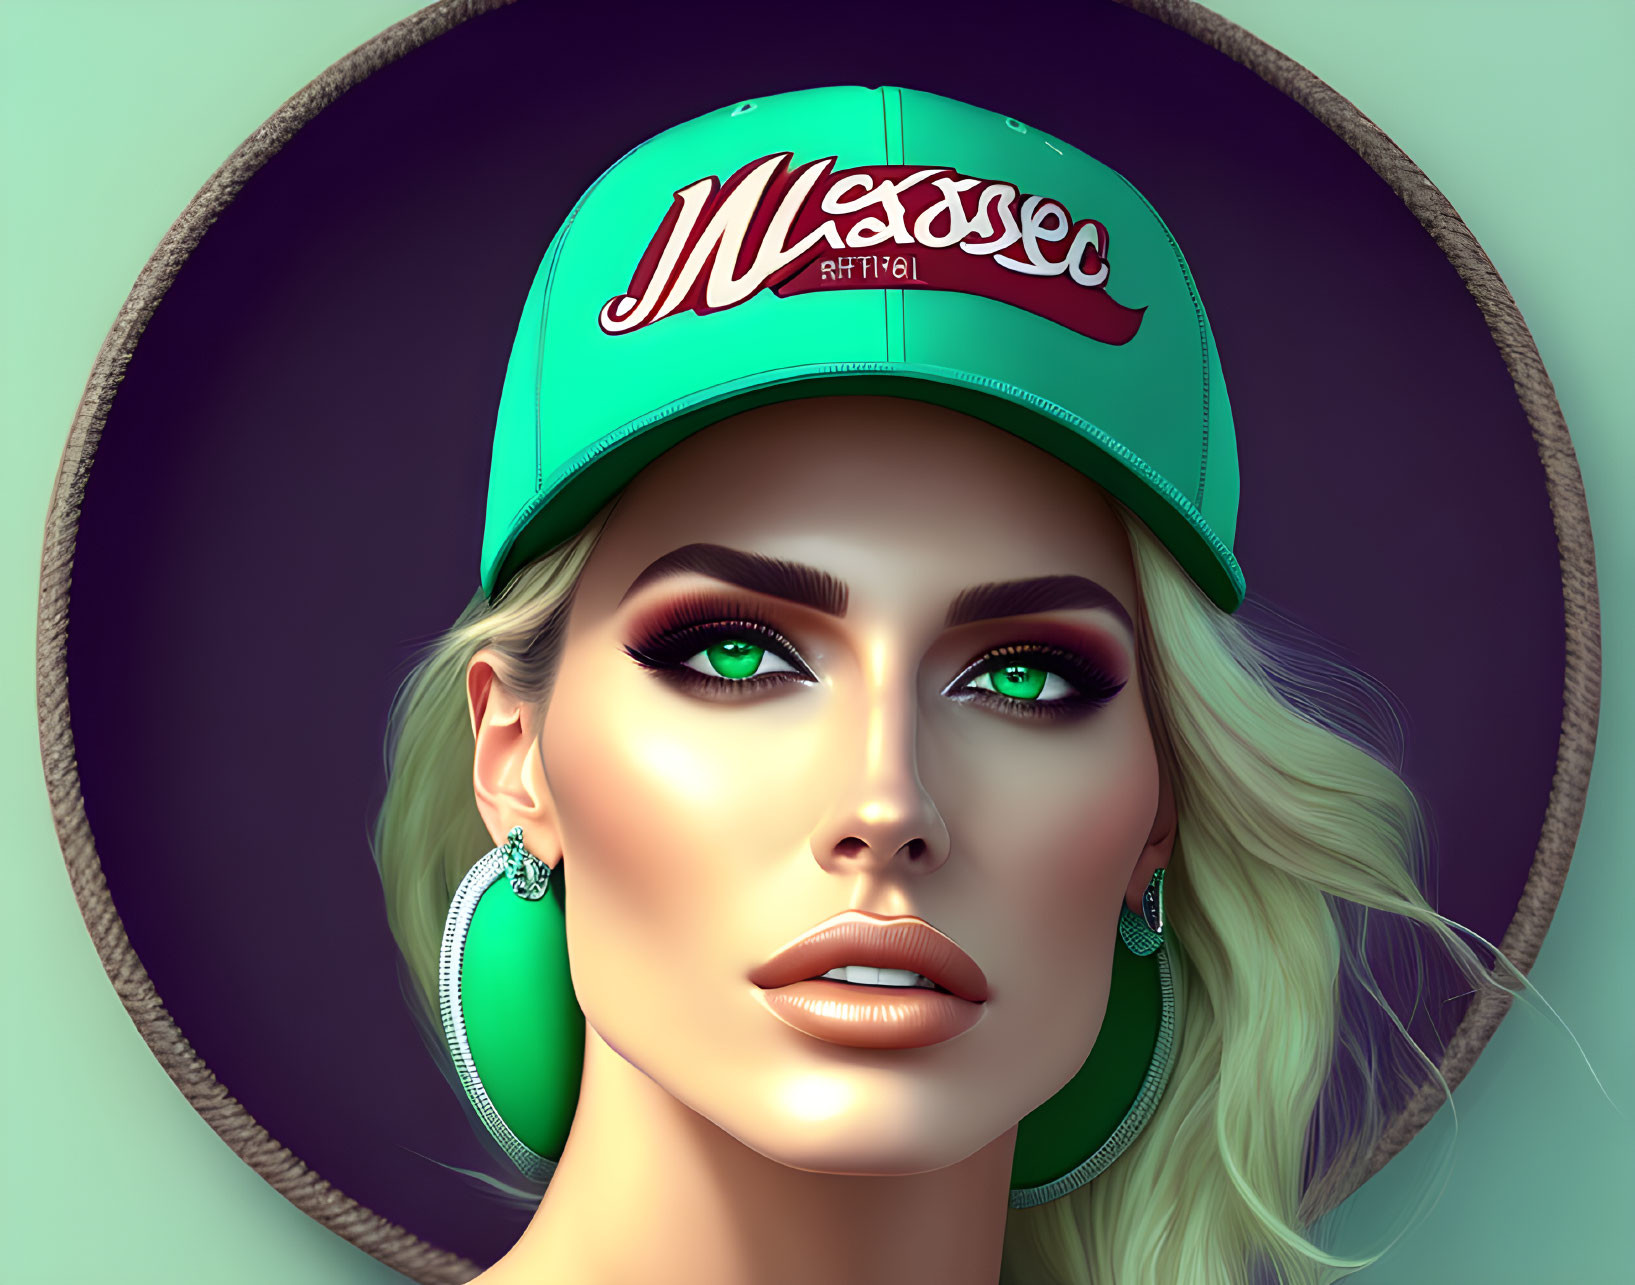 Portrait of a woman with green eyes, hoop earrings, teal cap.